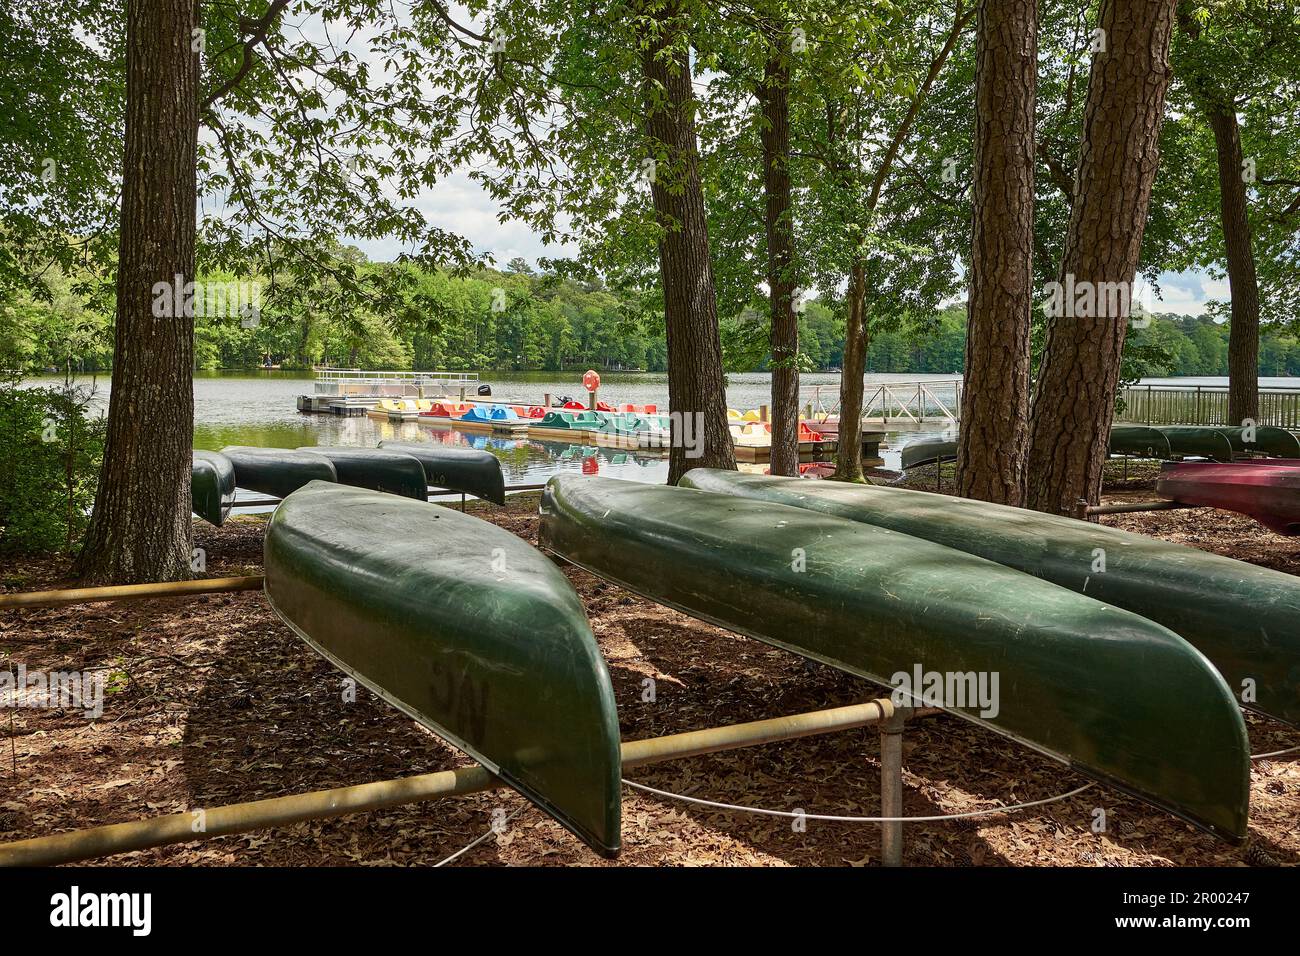 Des canoës verts sont entreposés à l'envers dans un lac boisé, tandis que des bateaux à pédales se trouvent près d'un quai au parc national de Trap Pond, dans le Delaware, aux États-Unis. Banque D'Images